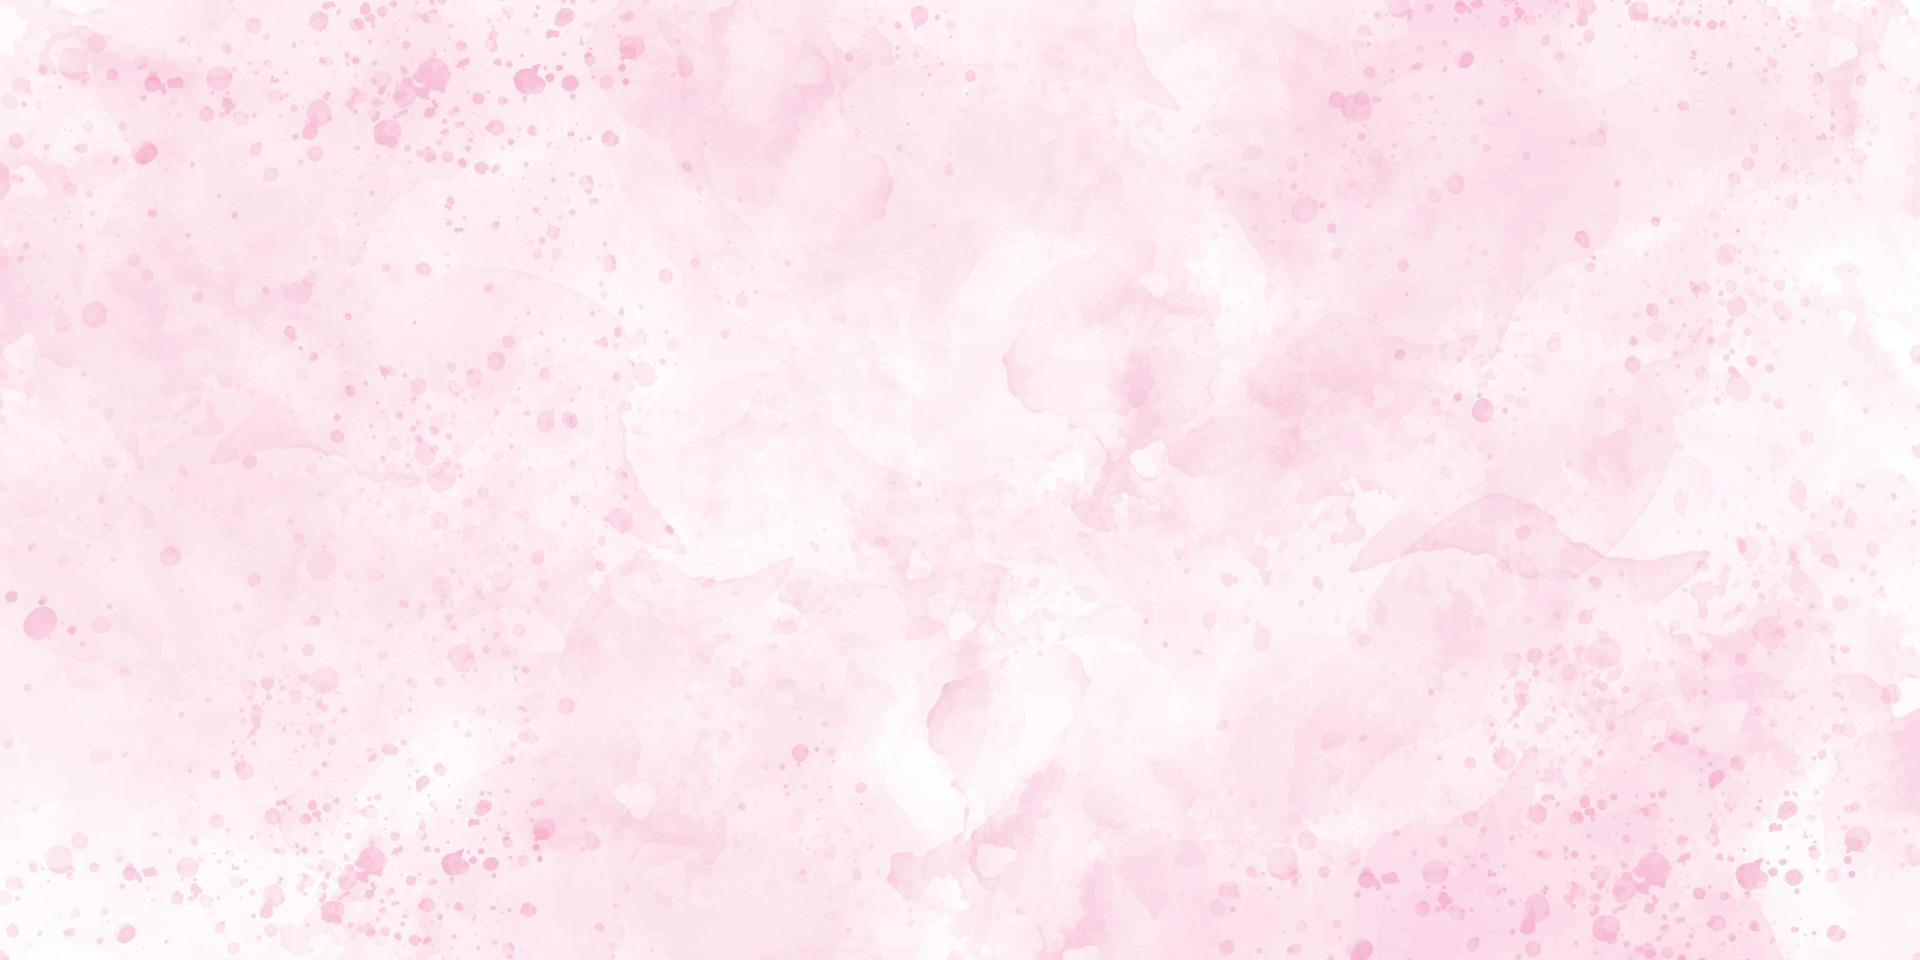 weicher rosa Aquarellhintergrund, Farbspritzer, Aquarell abstrakte nasse Hand gezeichnet für Tapete, Kartengruß, Plakat, Design, Abdeckung, Einladung. Vektor-Illustration vektor